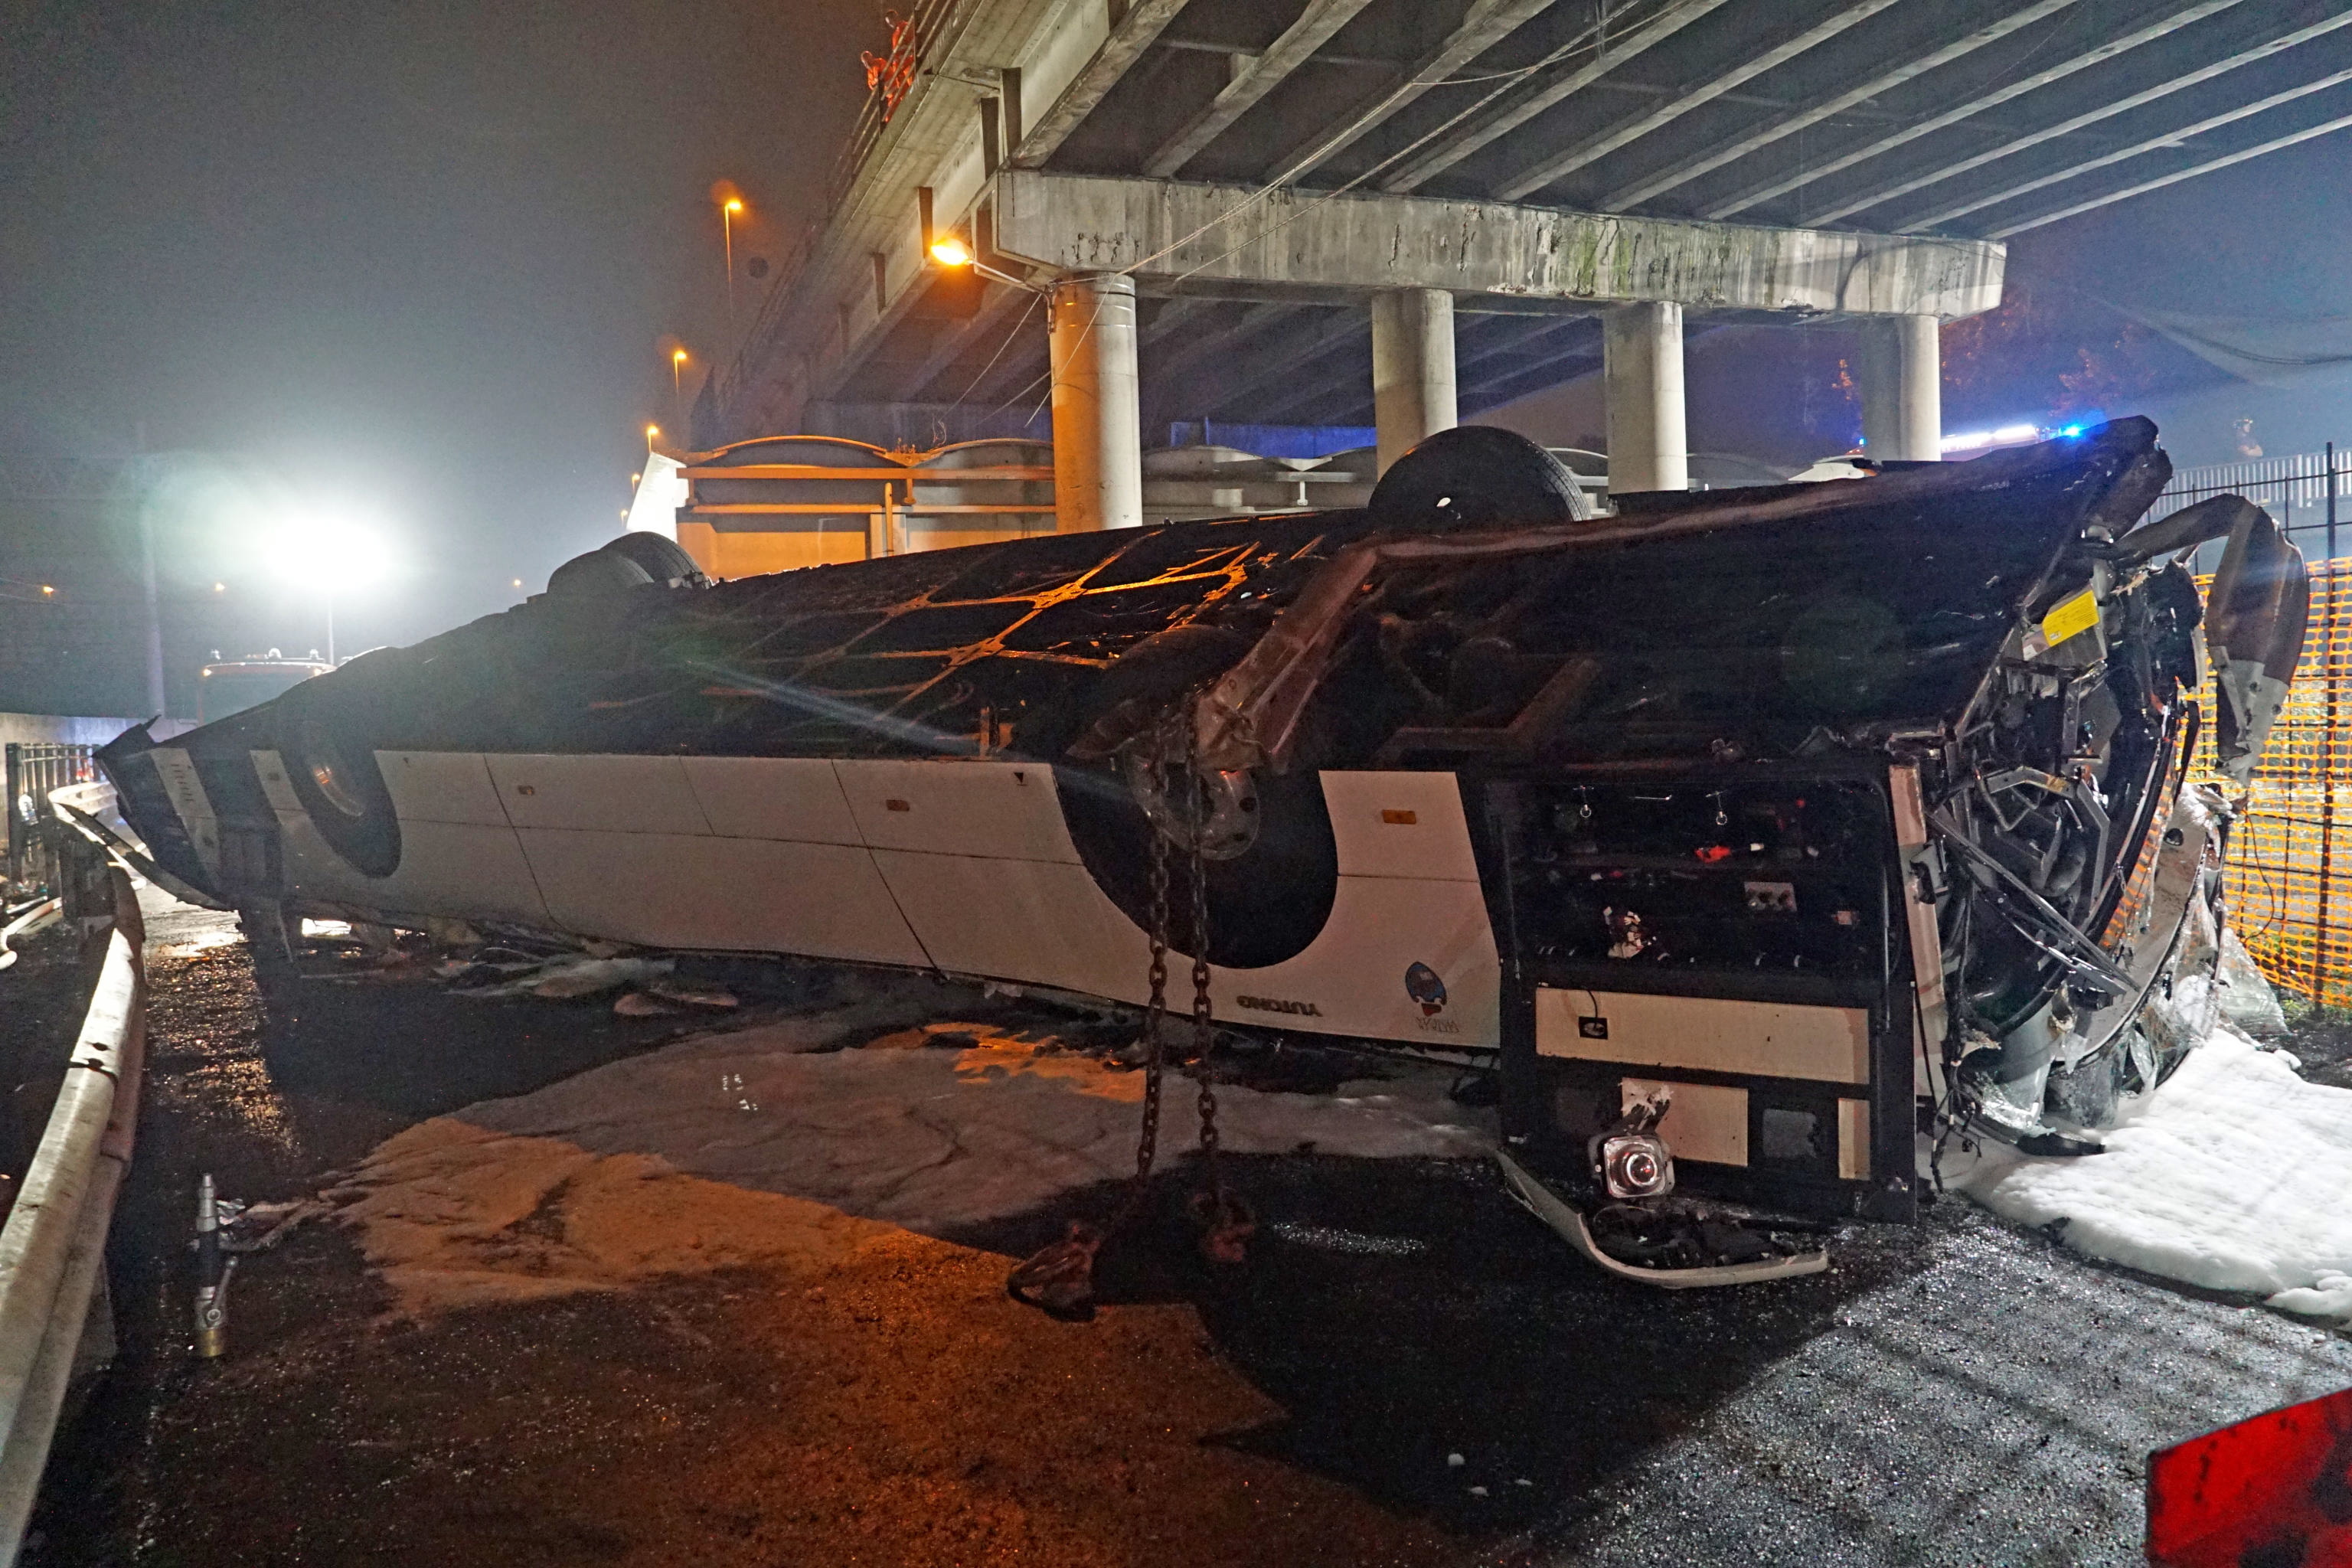 El conductor se desmayó, se durmió o el autobús se incendió antes de caer por el puente: las hipótesis sobre el accidente de Venecia